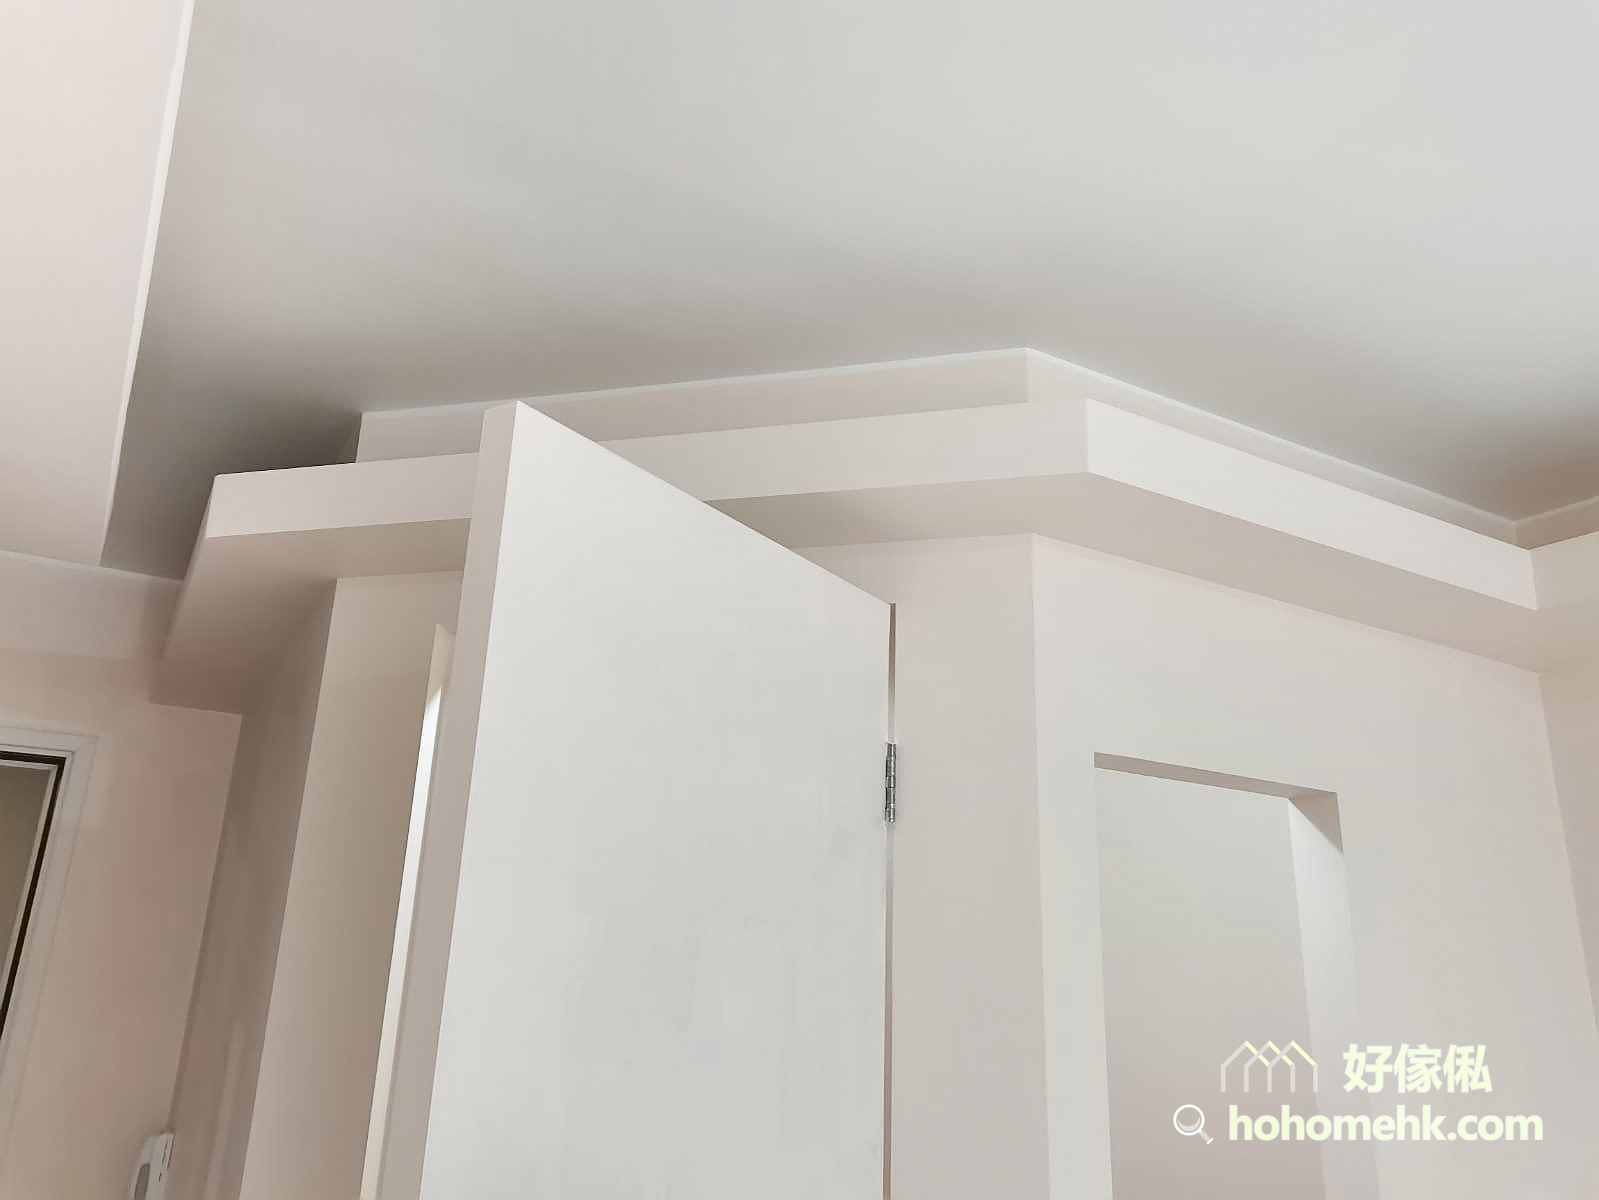 木板除了可以用來做系統櫃和隔間外，還可以建造天花板燈槽。圍著全屋空間訂做一整列的燈槽，柔和的光線讓空間充滿溫馨感與造型感